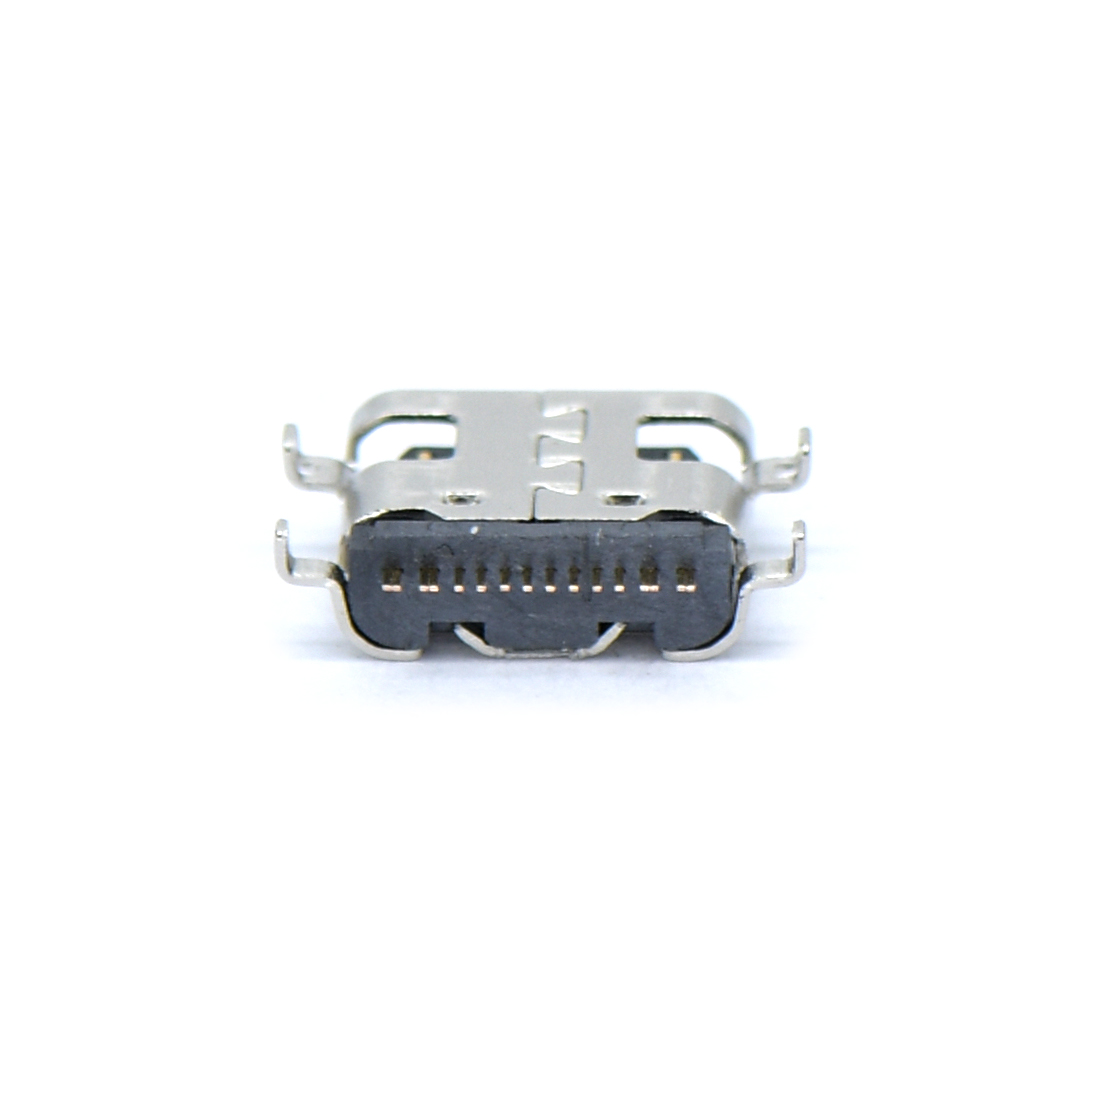 USB连接器Type-C 16P/F SMT 沉板式1.0mm 外壳四脚插板 L=6.5mm 无弹